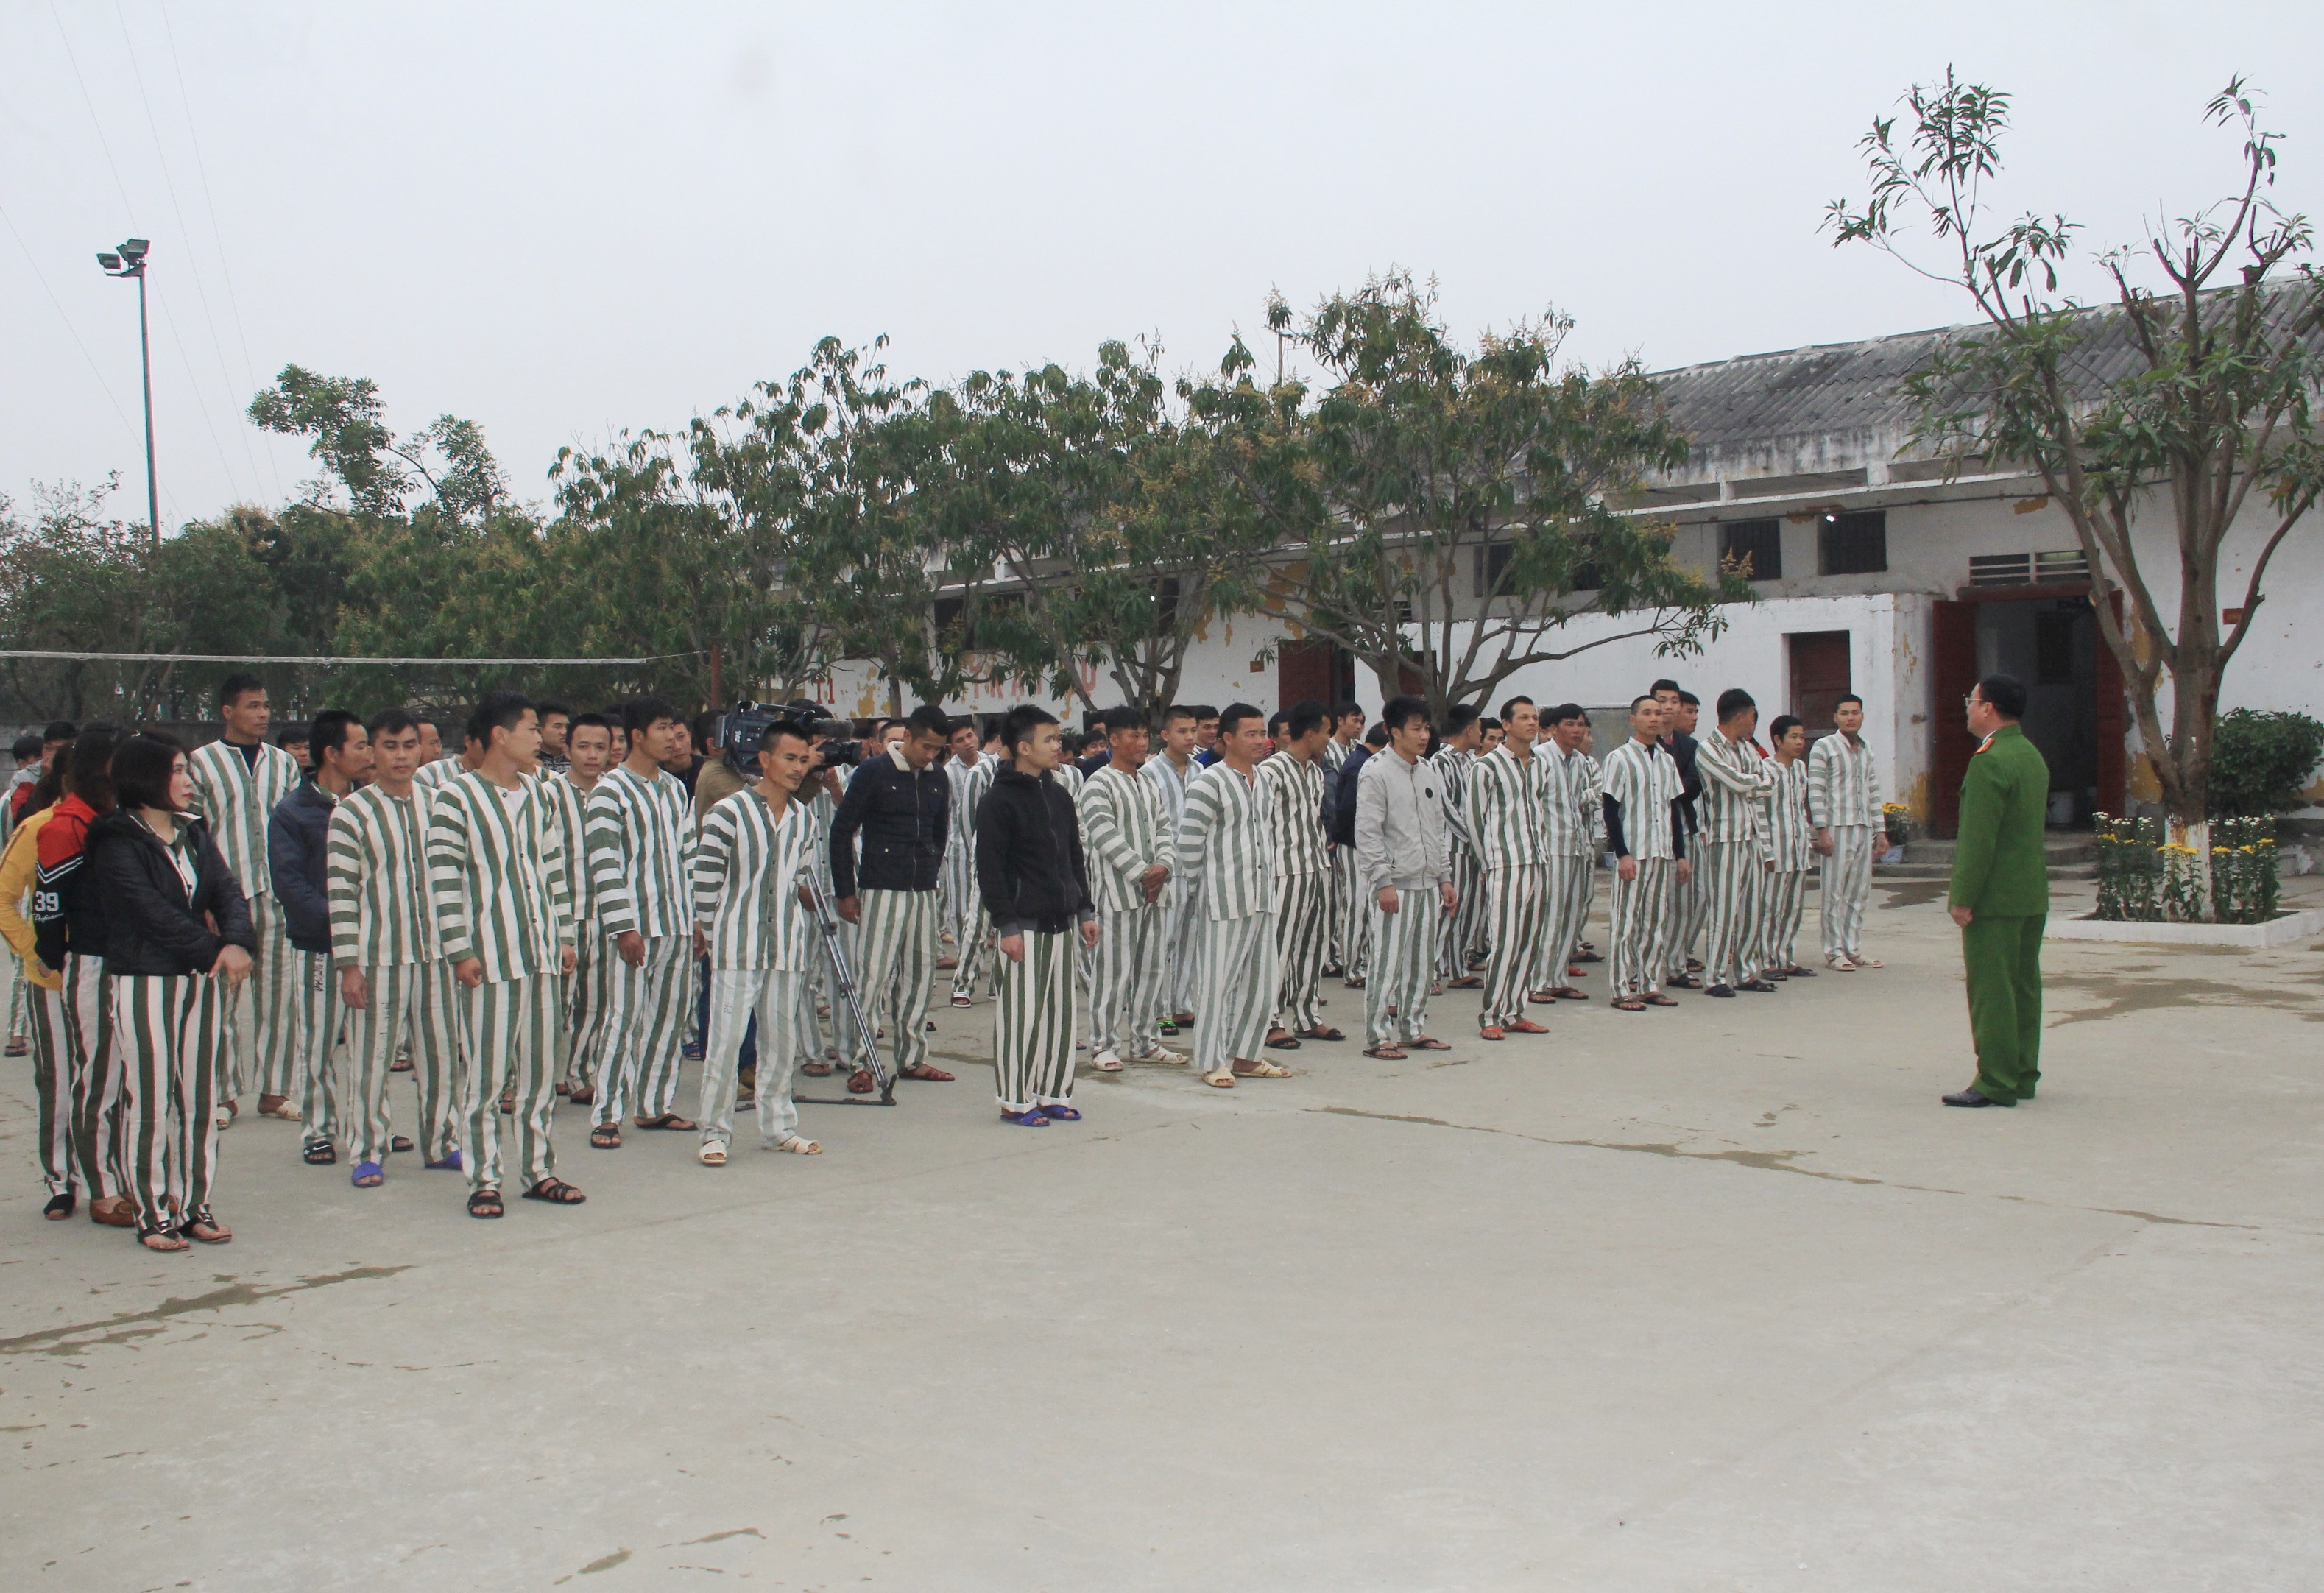 Đã thành thông lệ, cứ vào khoảng 25 tháng Chạp hàng năm, Trại tạm giam Công an tỉnh Nghệ An lại tổ chức bữa cơm tất niên sớm dành cho 109 phạm nhân đang thi hành án tại đây. Ảnh: Phạm Bằng